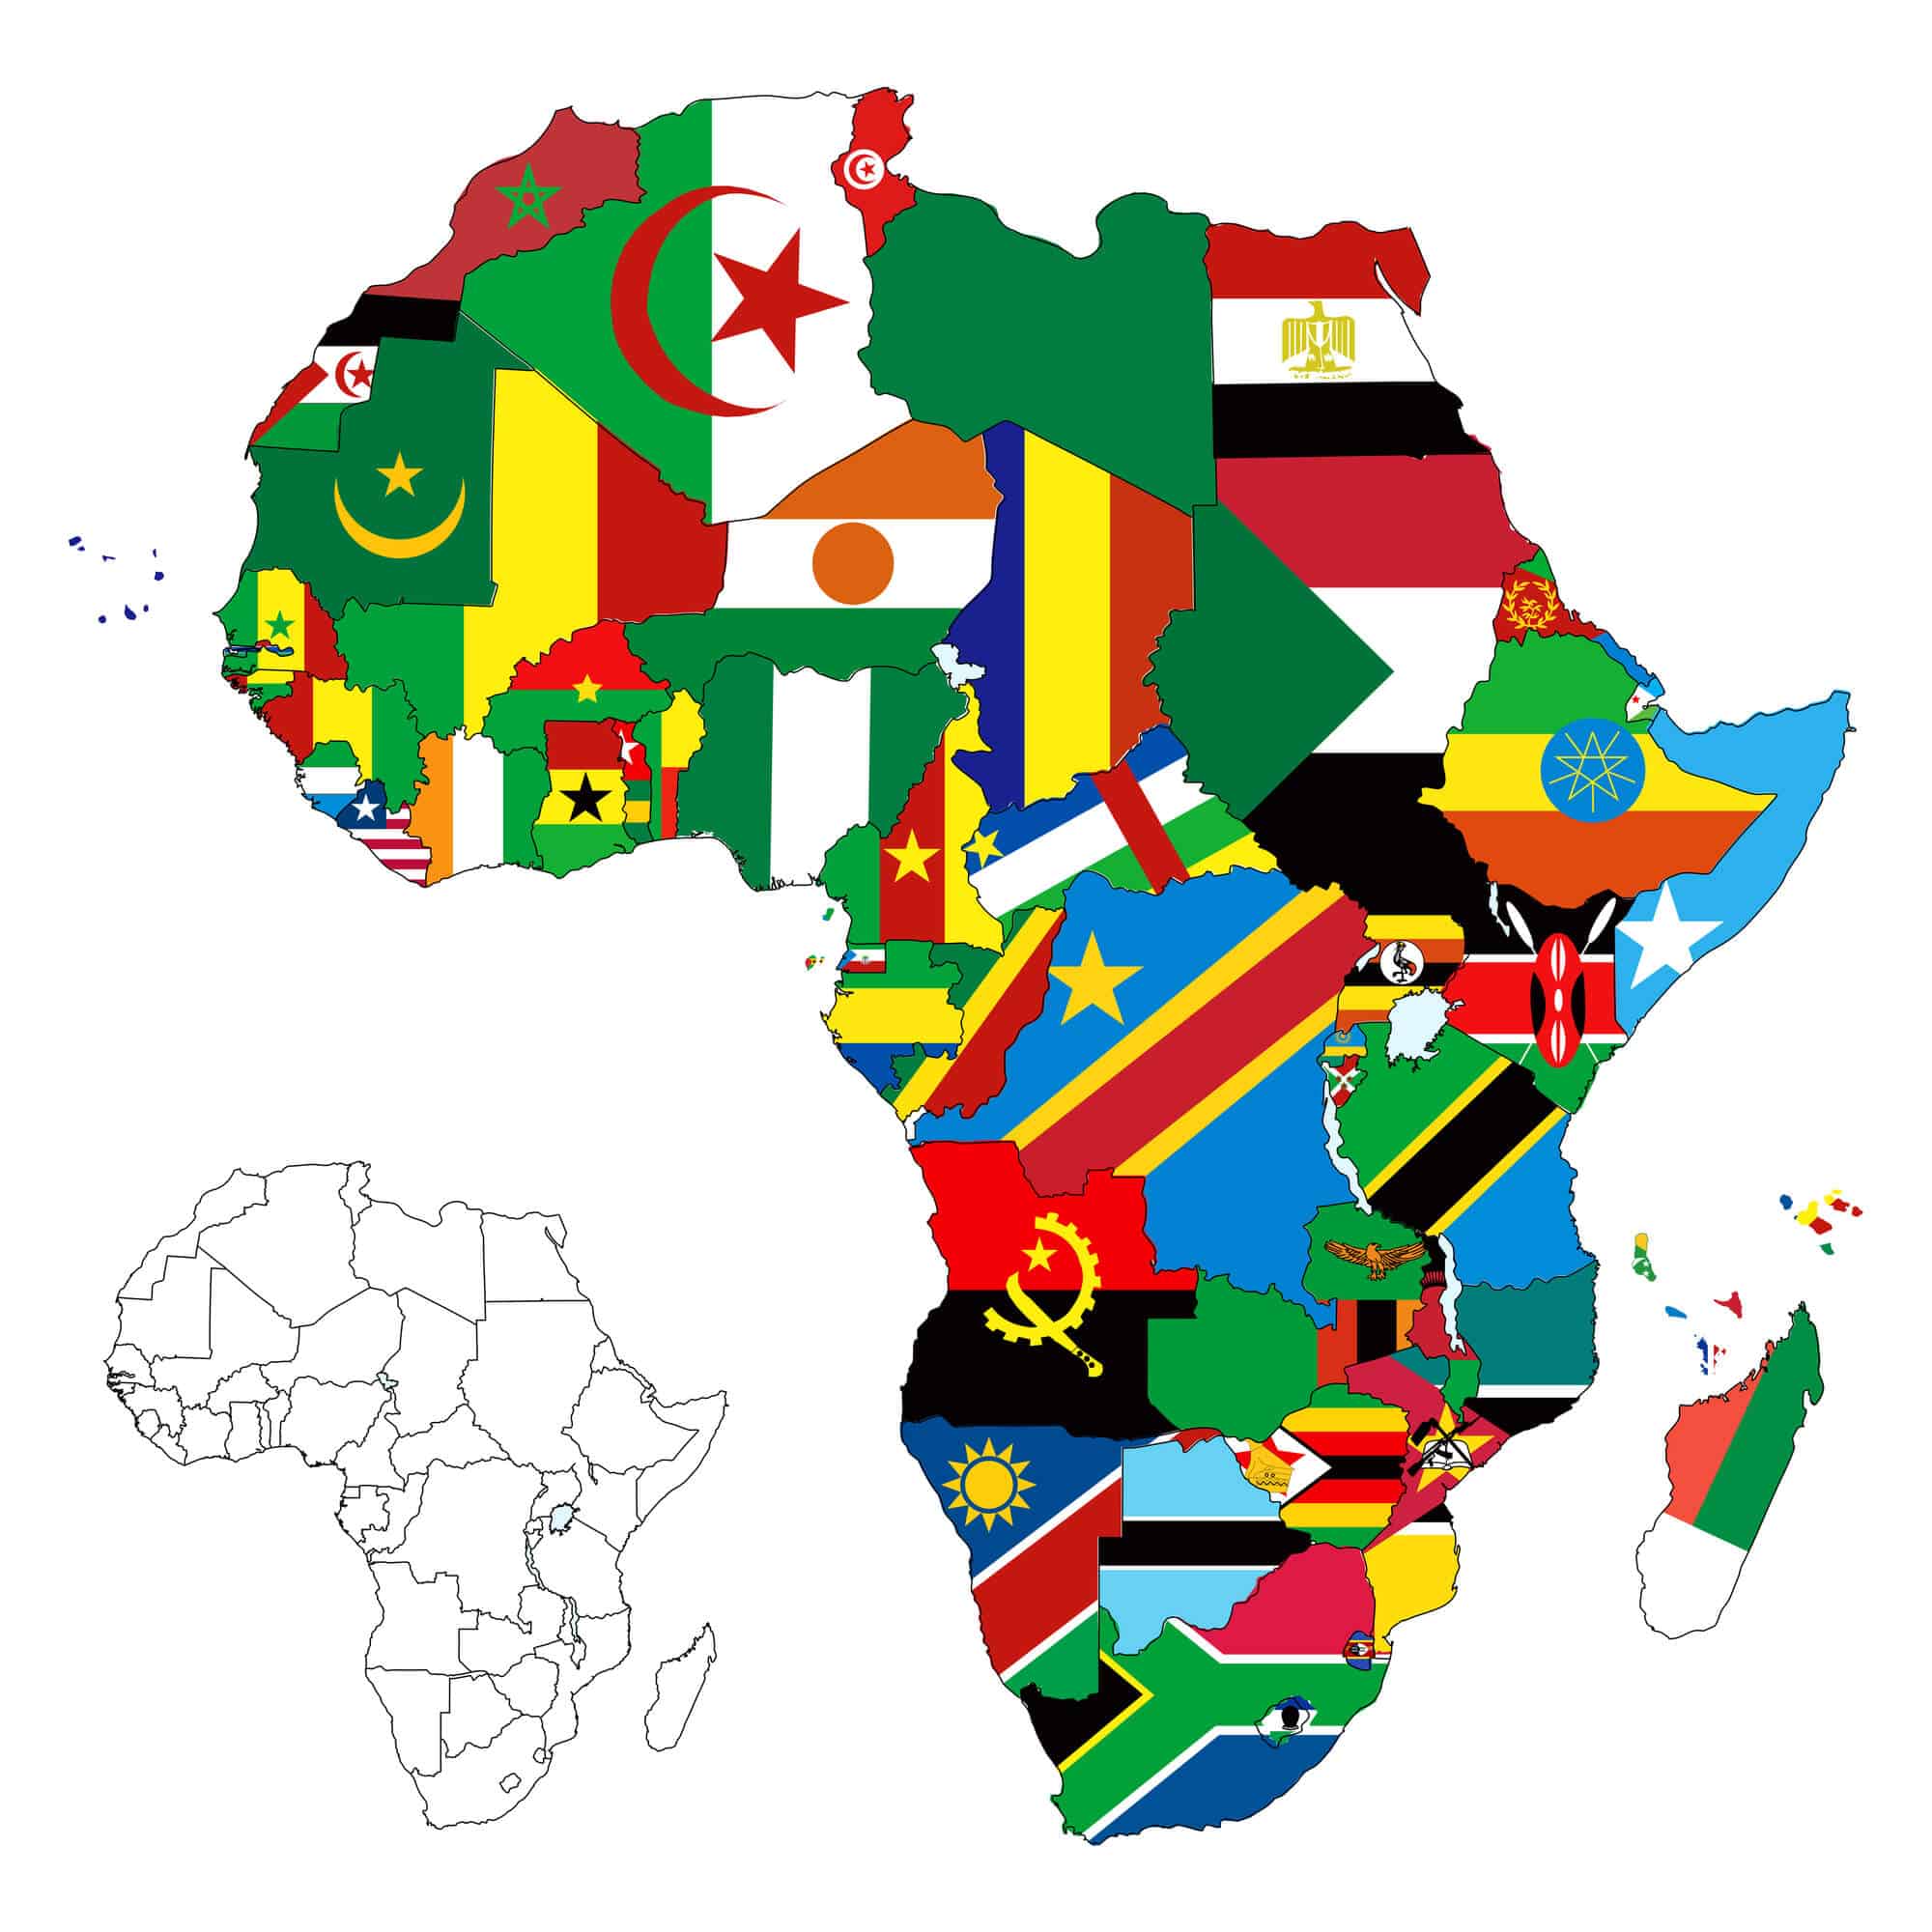 אפריקה - 50 מדינות שהעושר שלהן יוצא החוצה ולא מגיע לתושביהן. <a href="https://depositphotos.com. ">איור: depositphotos.com</a>